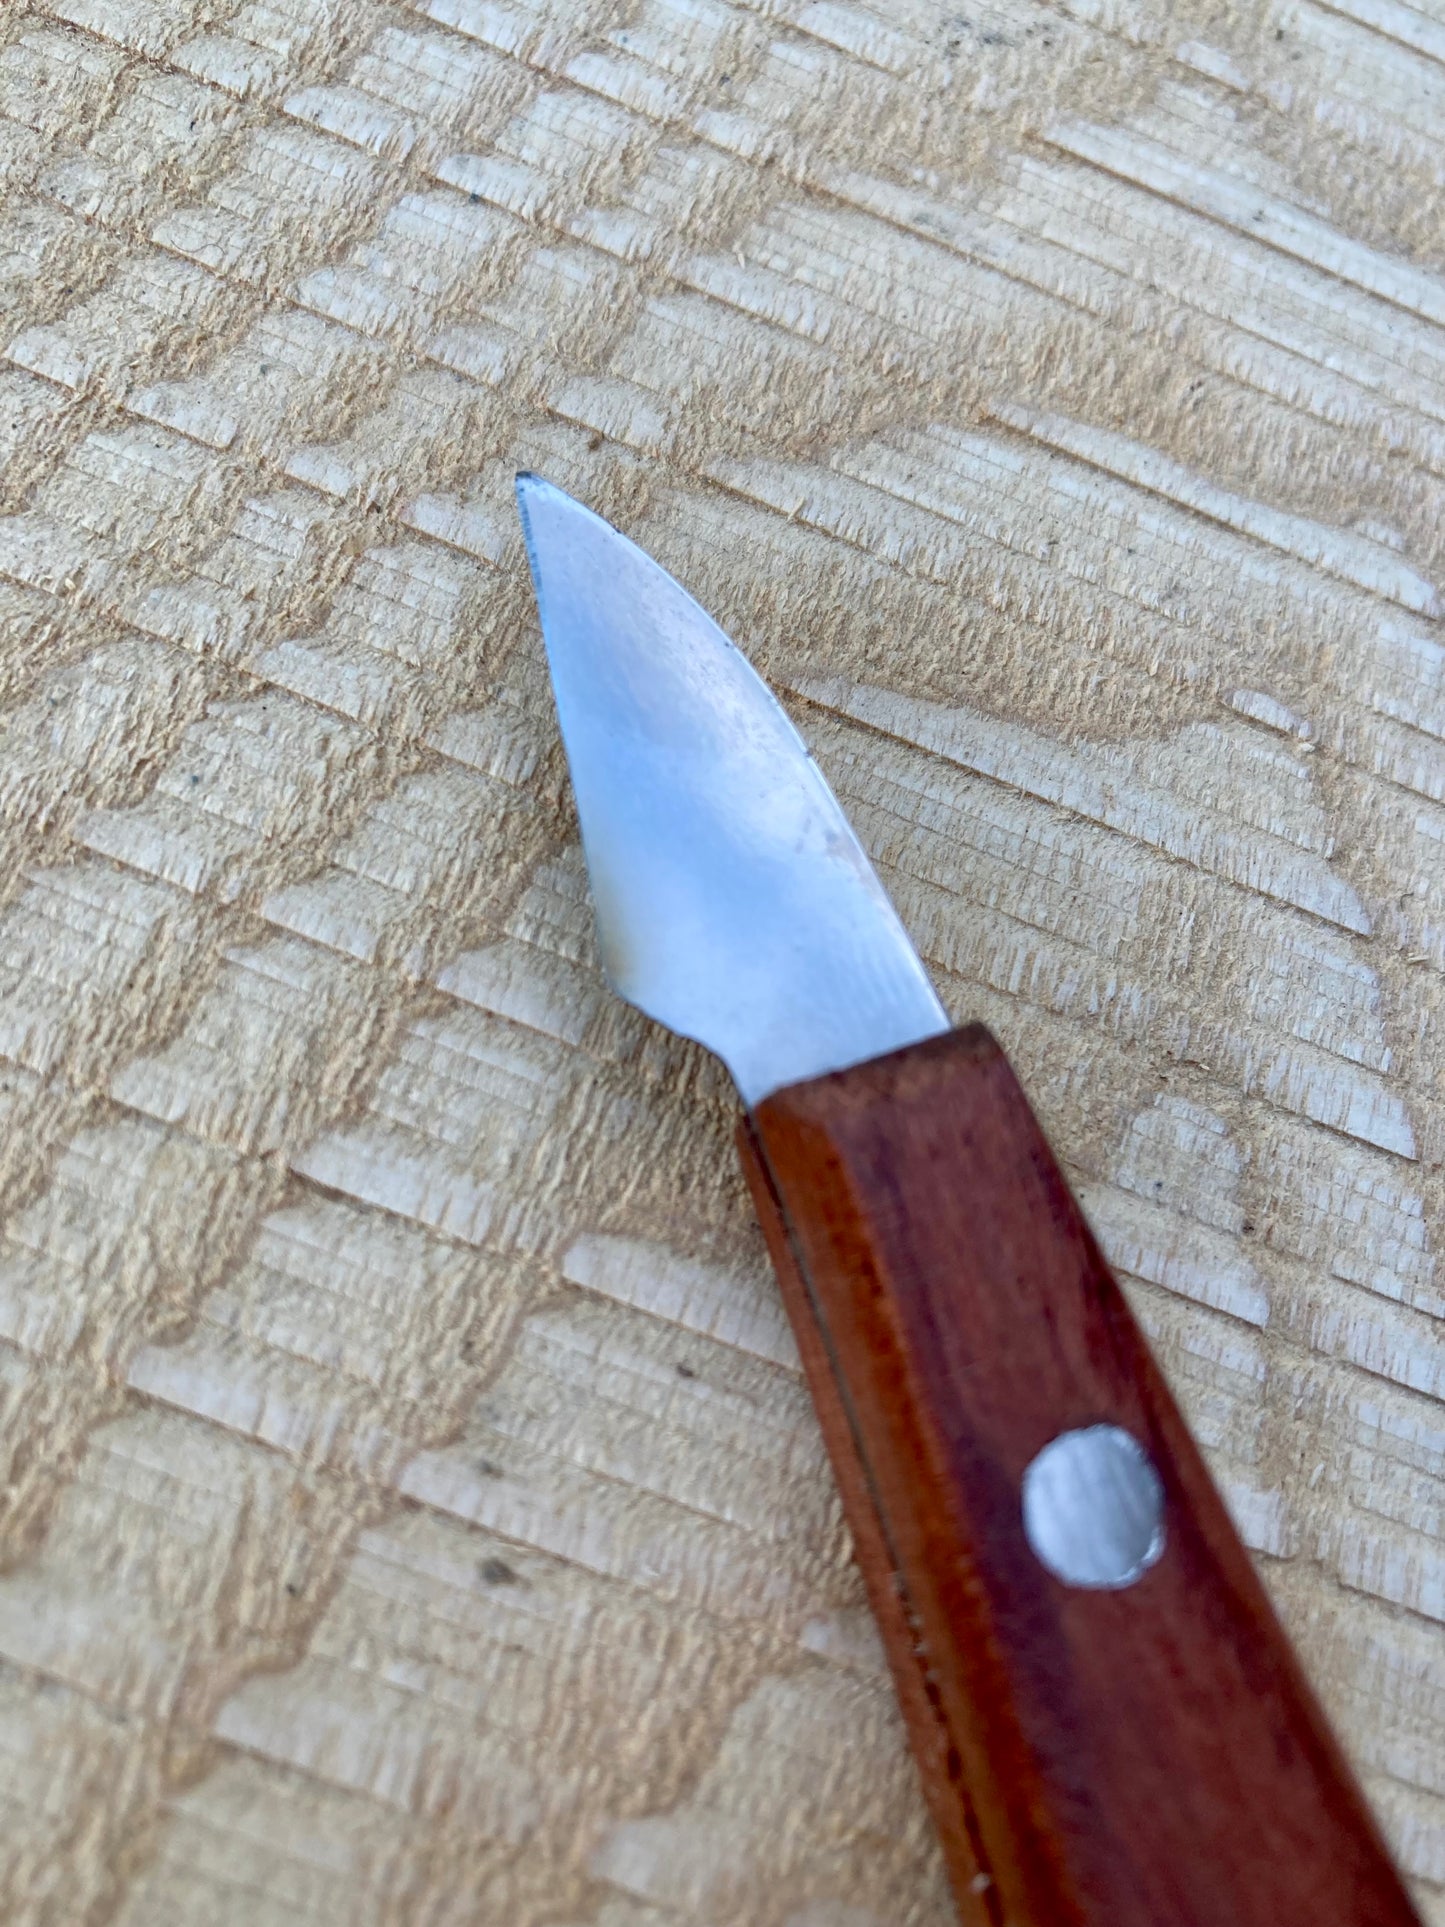 Beber - Chip Carving Knife